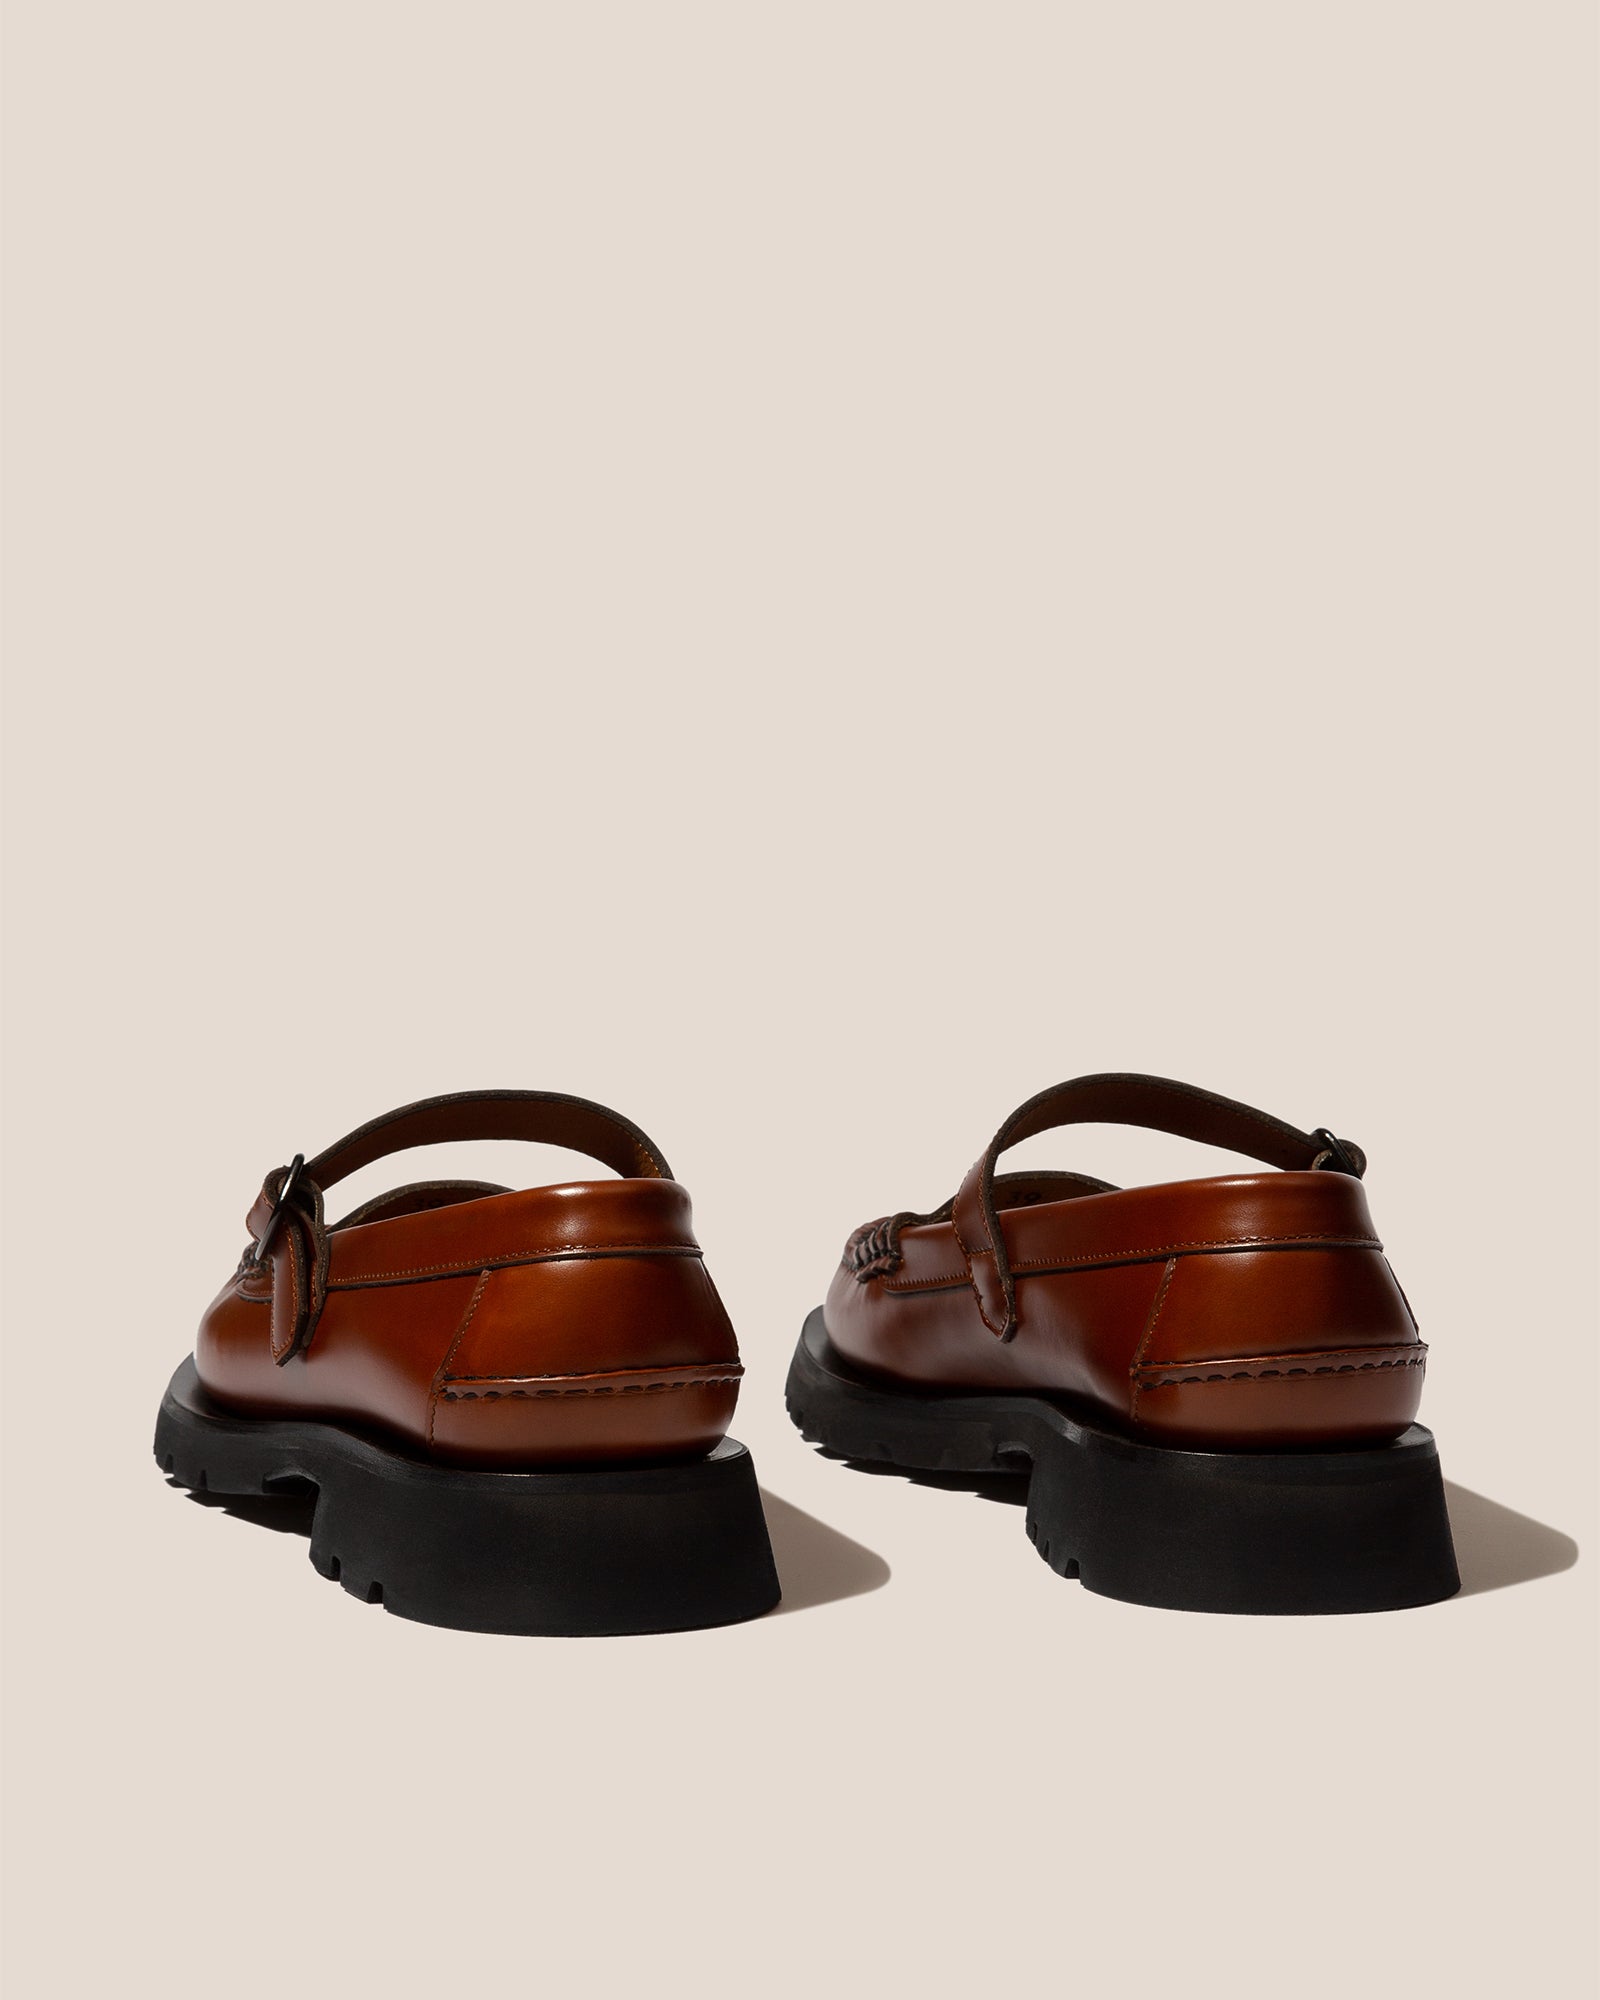 Louis Vuitton leather Canvas Men's Sandals Size 7